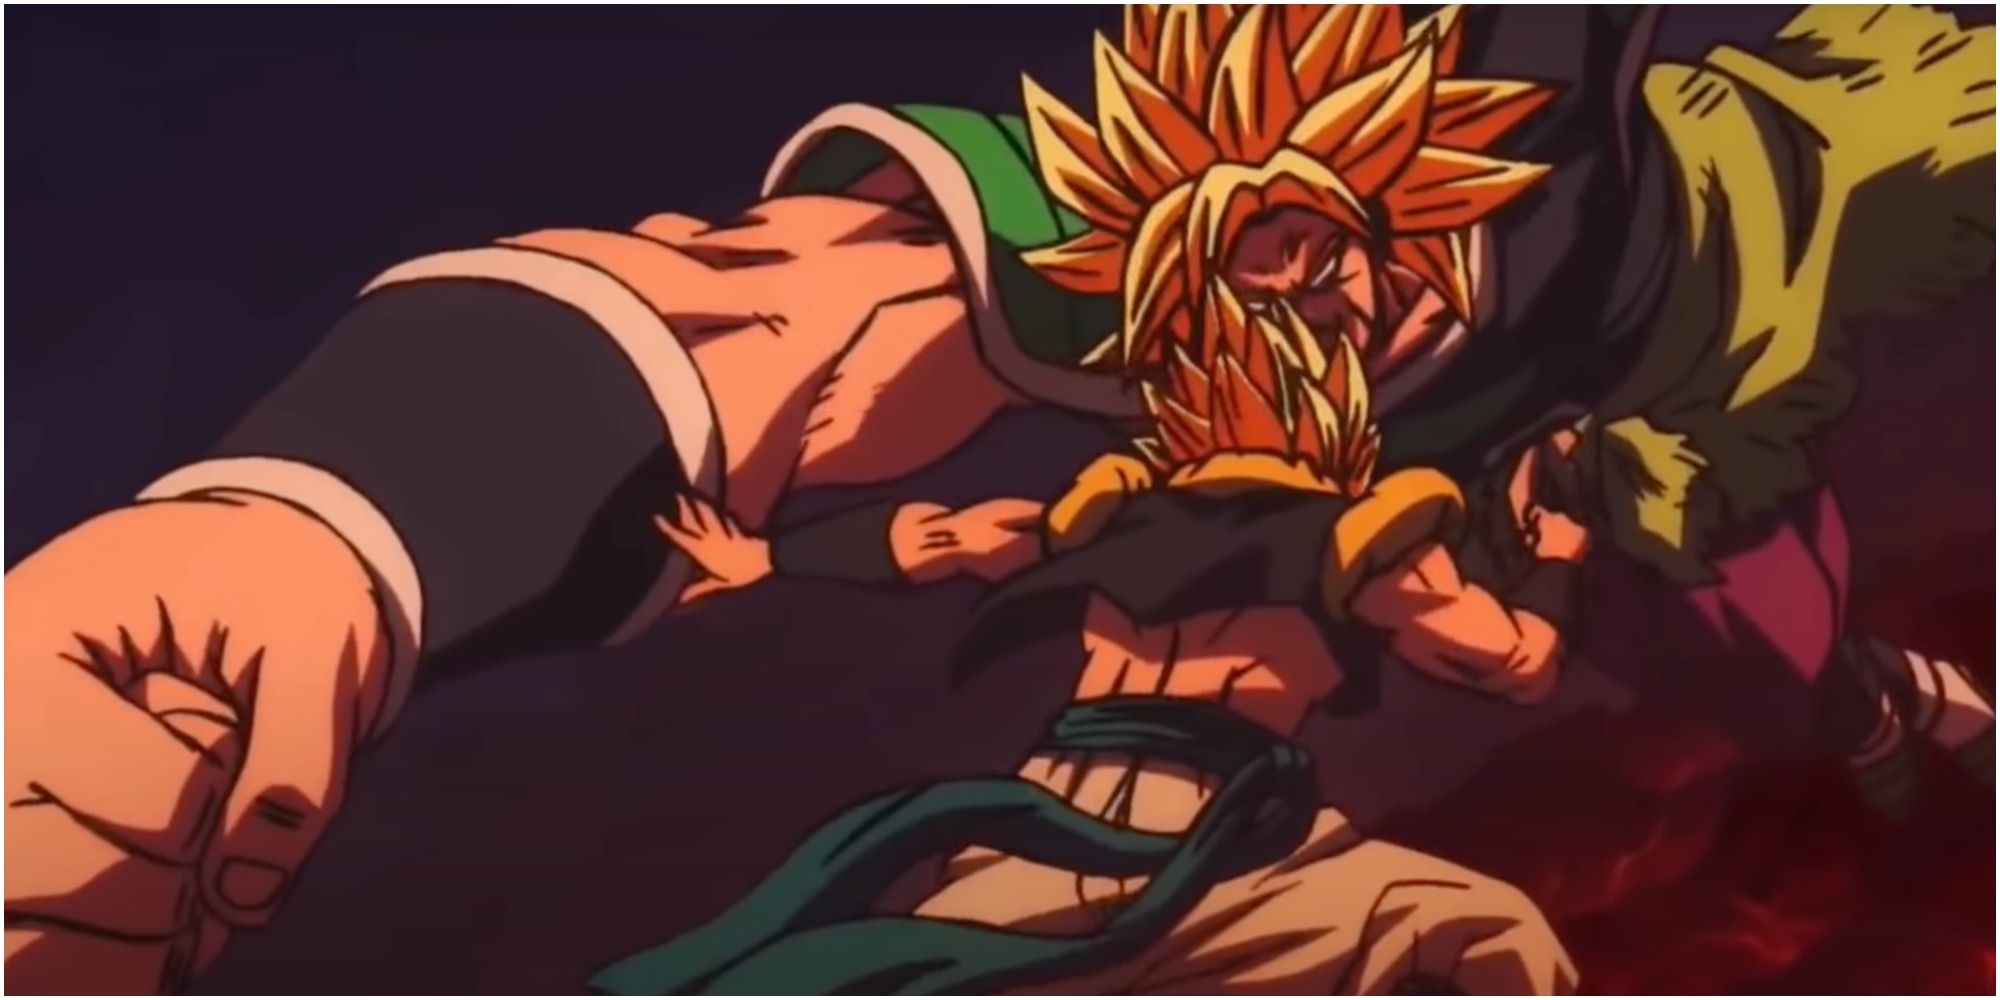 Goku and Vegeta fuse to be Gogeta vs Broly